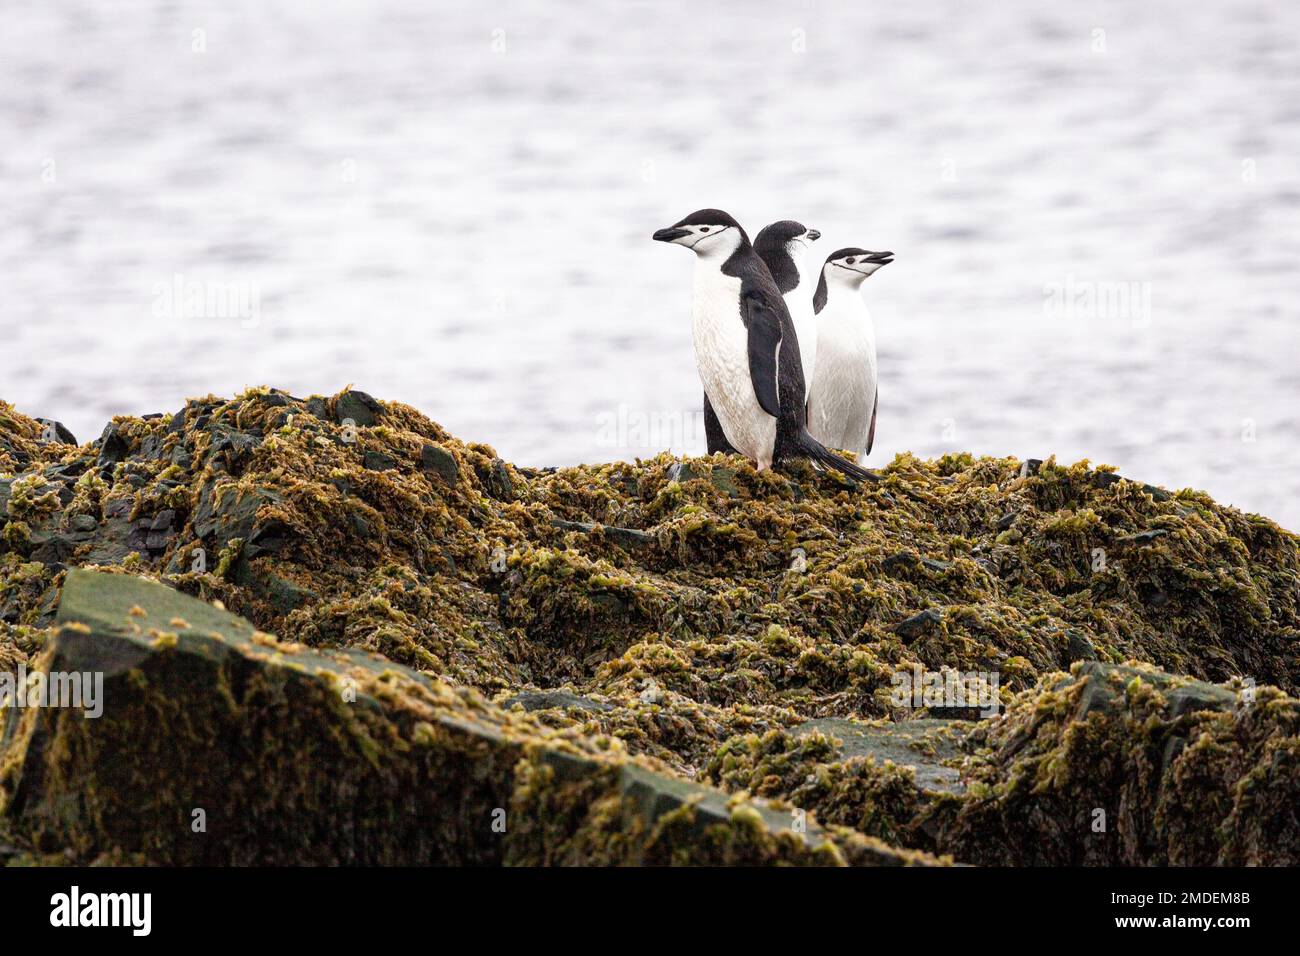 Trois pingouins de Chinstrap (Pygoscelis antarcticus) se dressent ensemble sur une grande roche recouverte d'algues lors d'un jour sombre dans l'Antarctique. Banque D'Images